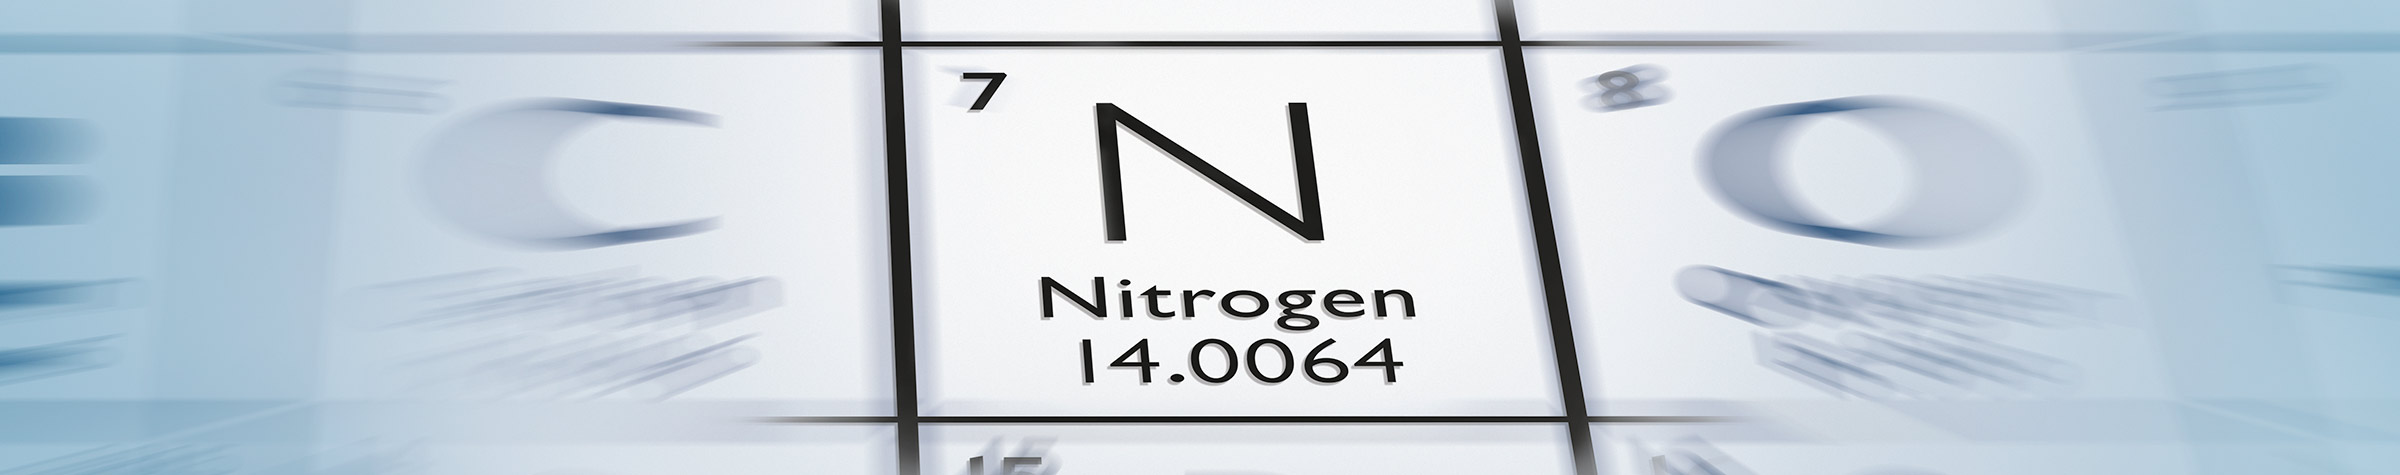 Nitrogen Compressors